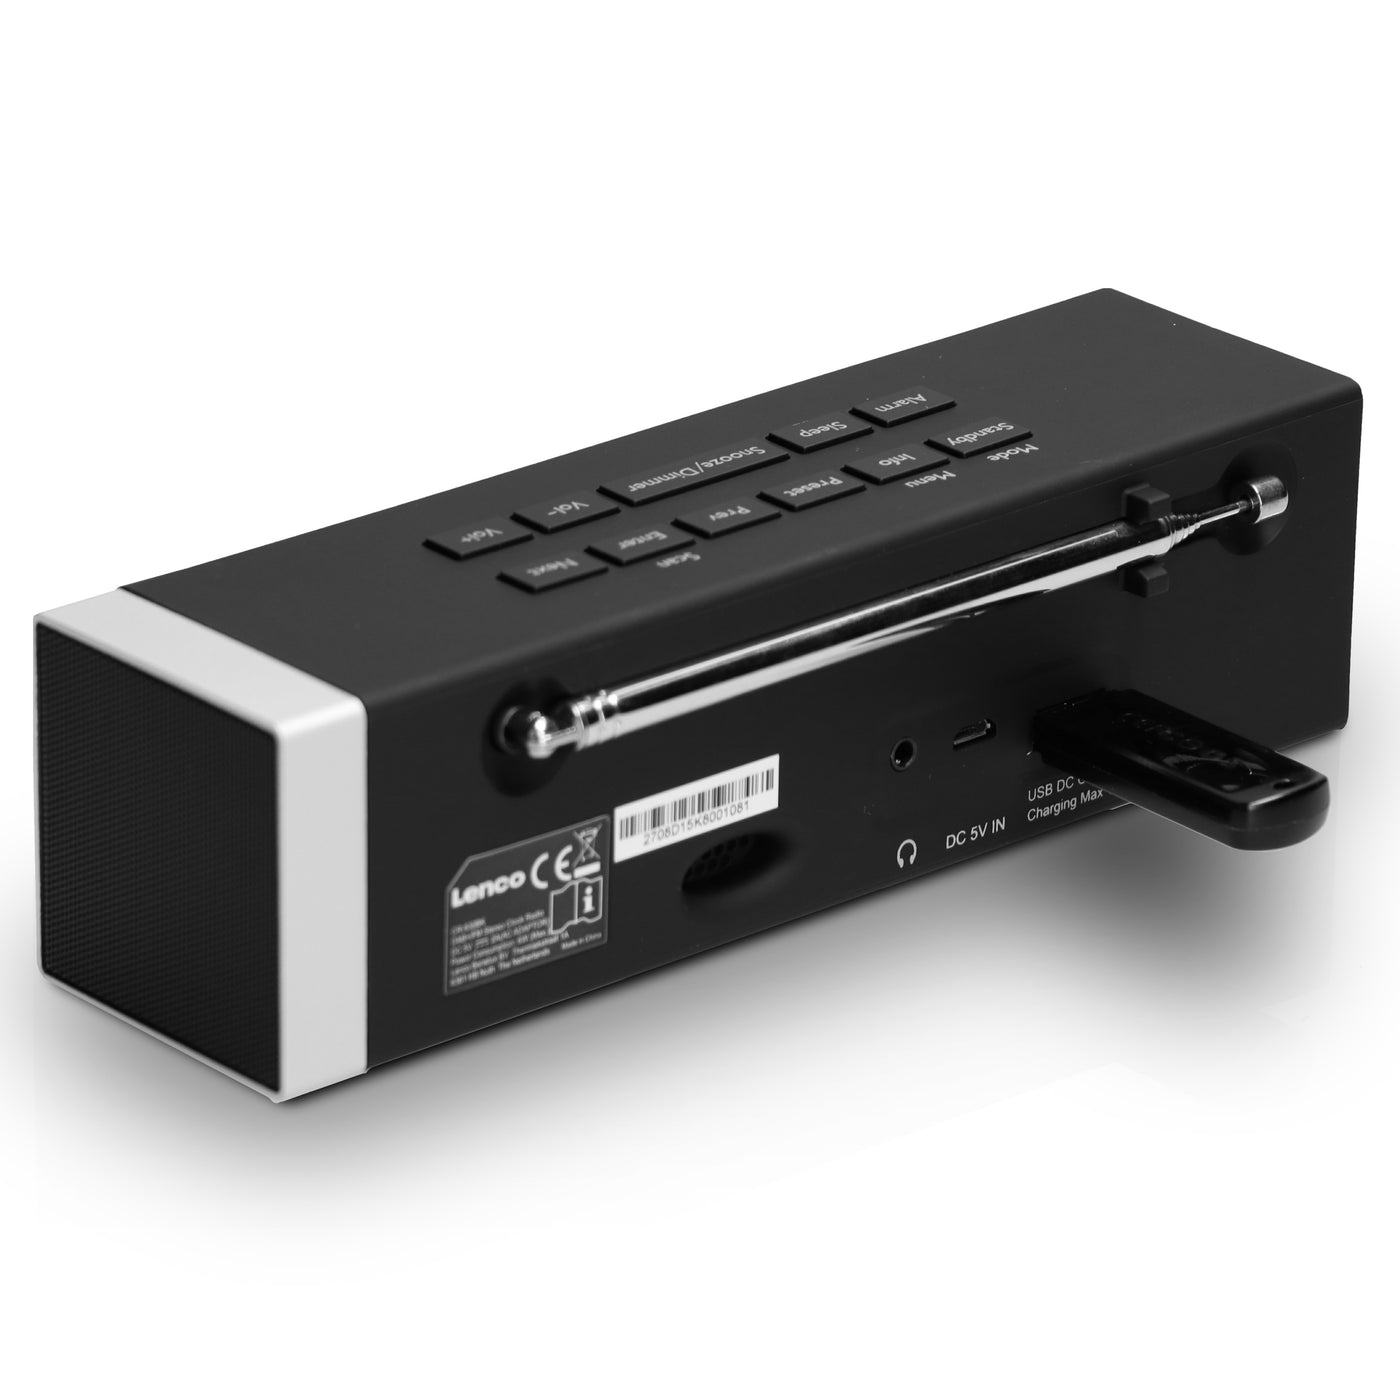 LENCO CR-630BK - Radiobudzik stereo DAB+/FM z portem USB i wejściem AUX - Czarny